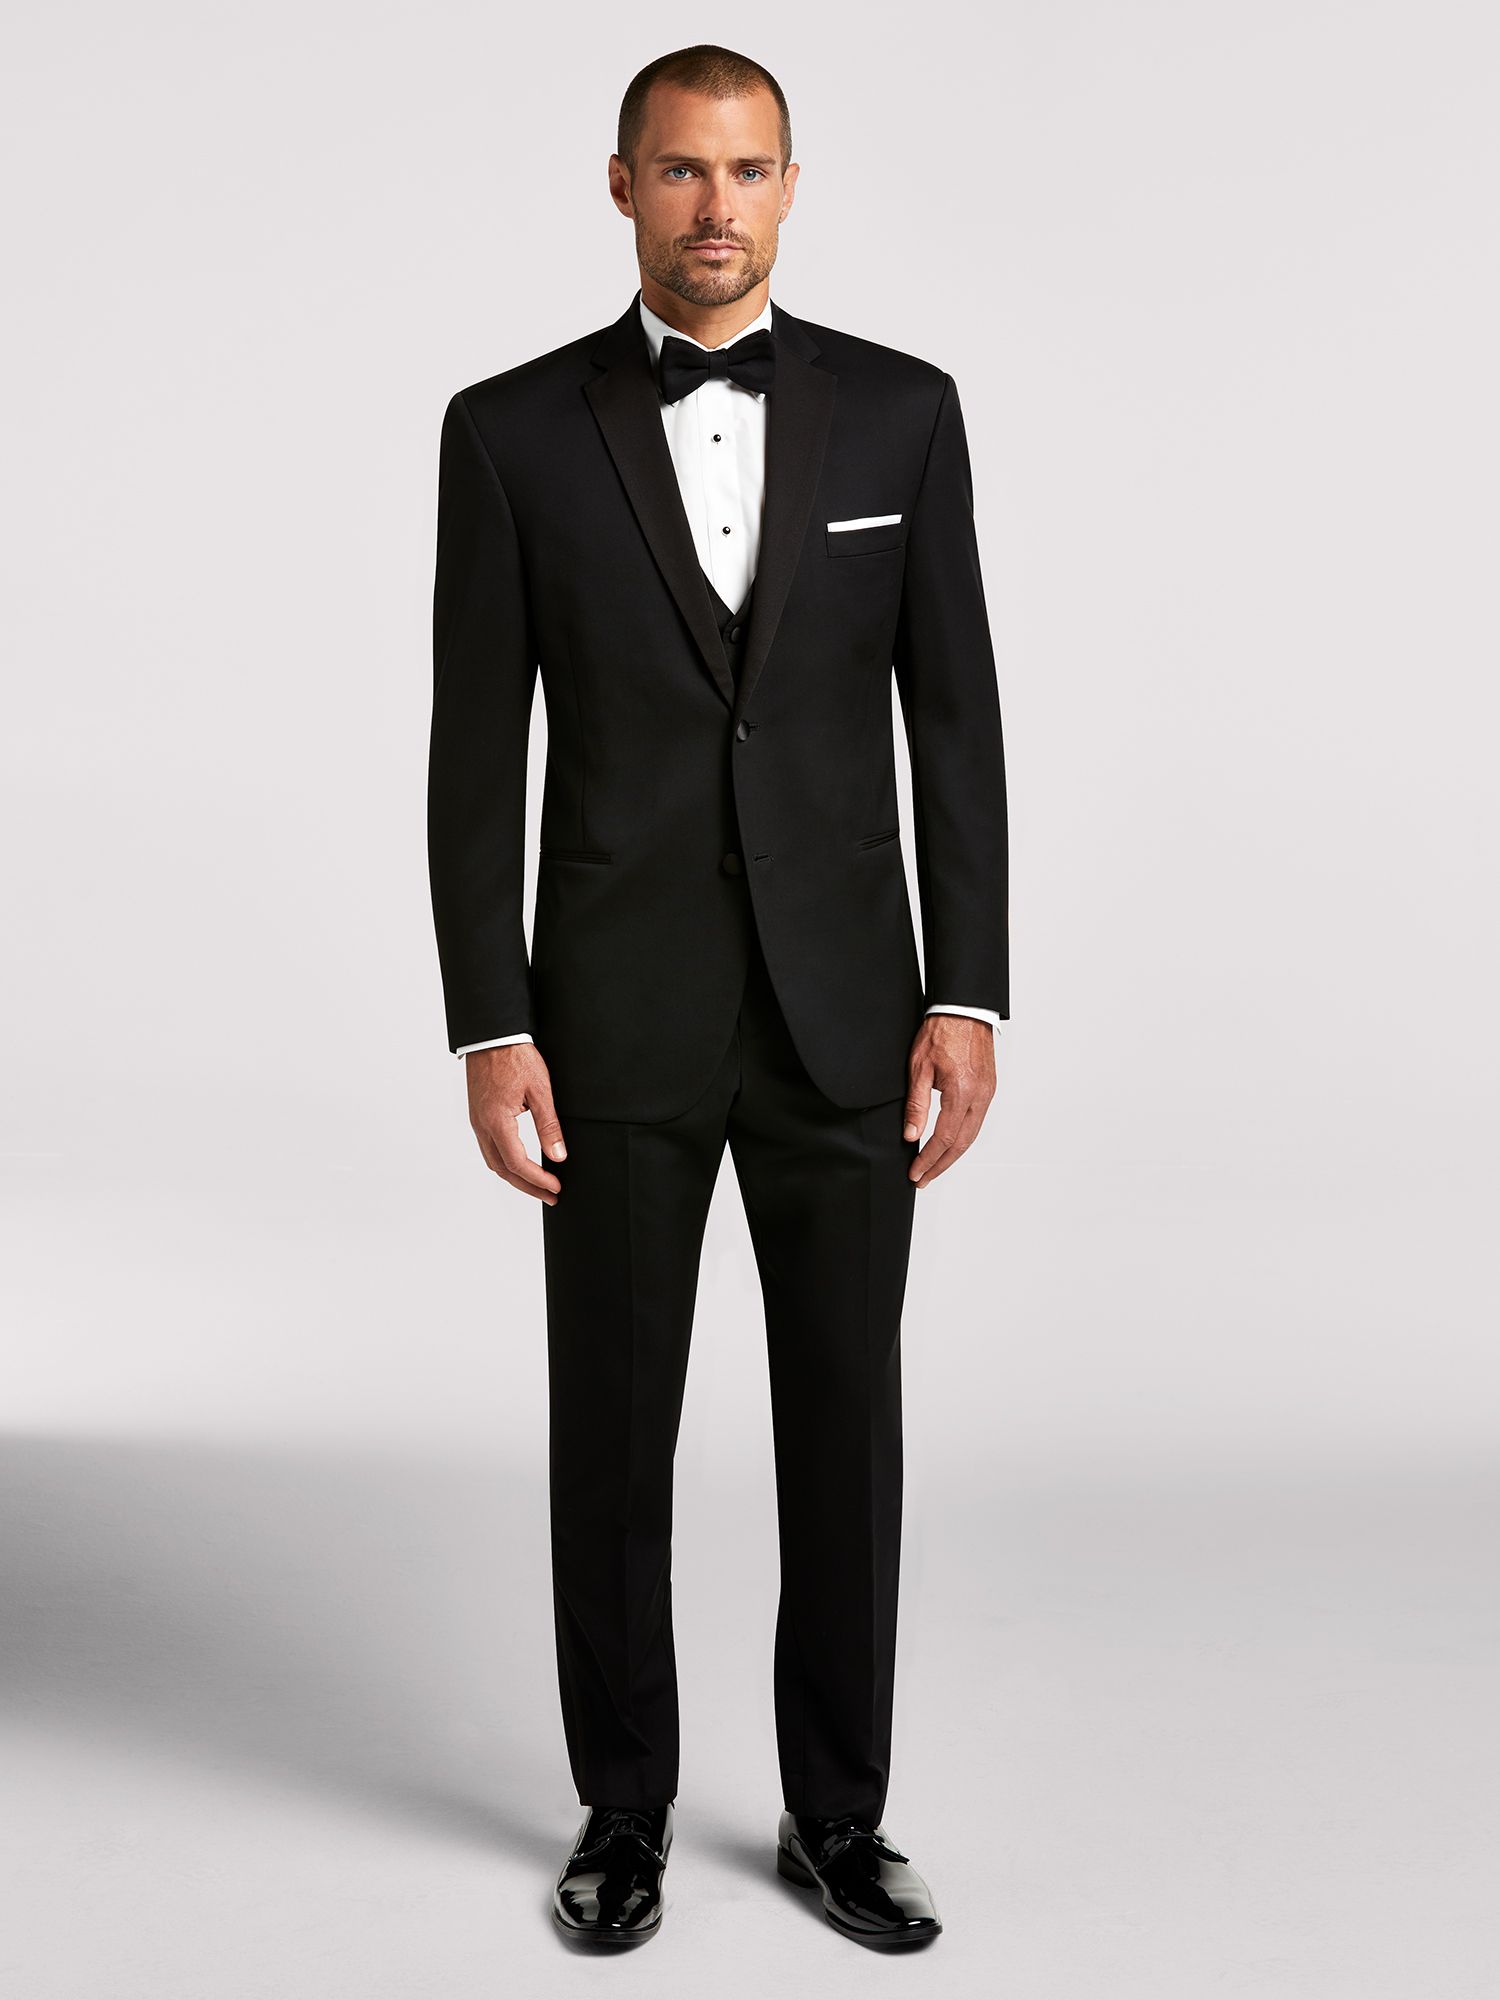 Wedding Tuxedos Wedding Suits For Men Groom Men S Wearhouse